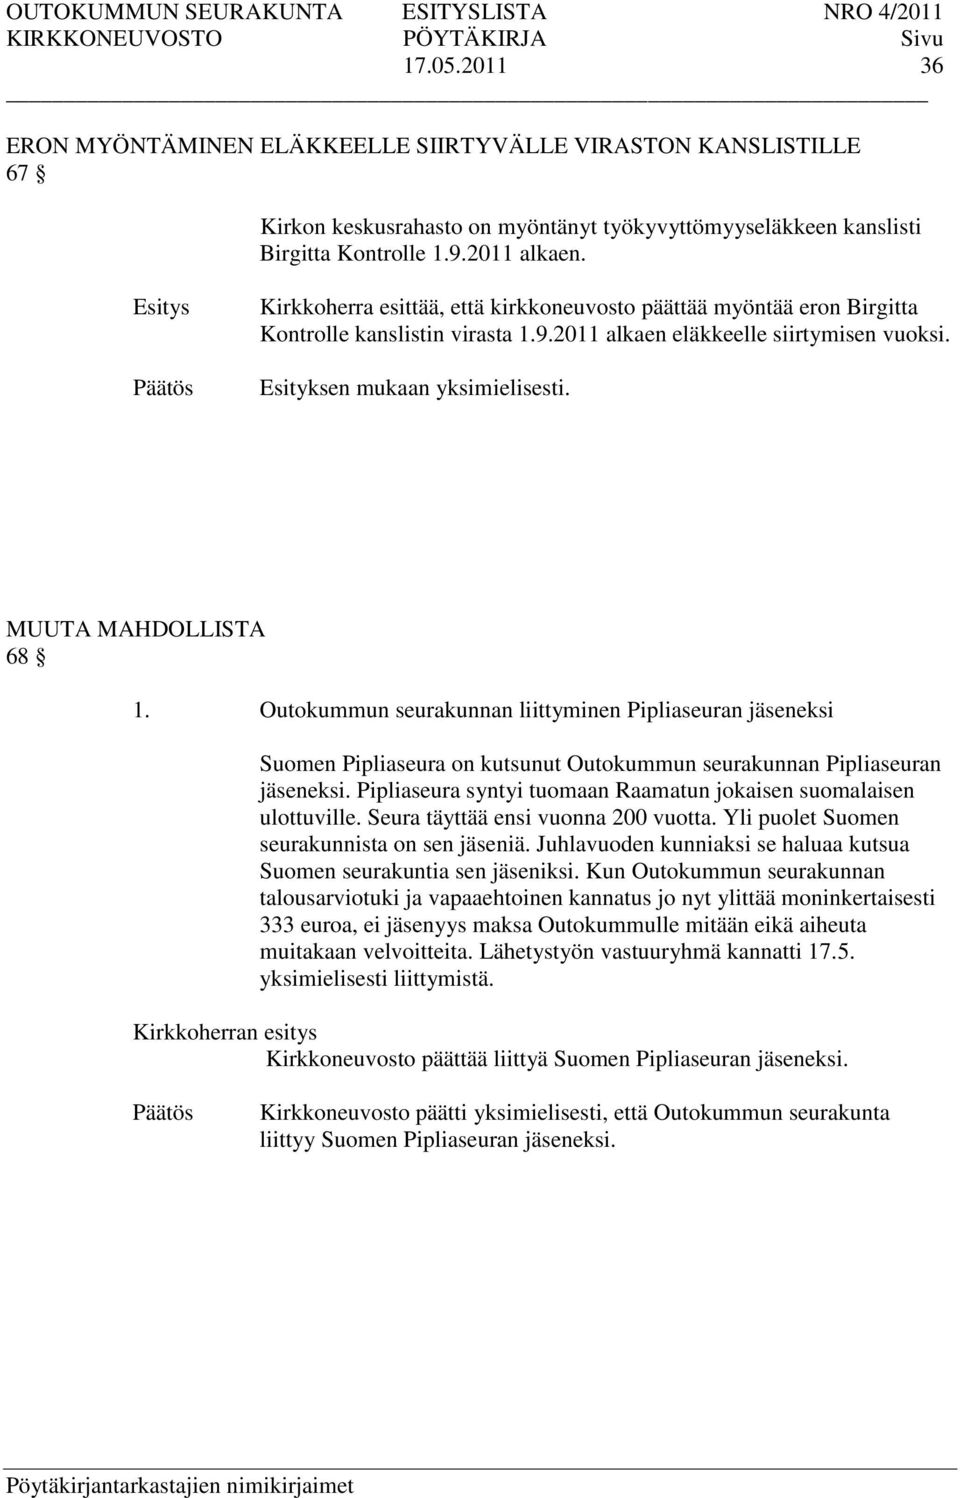 MUUTA MAHDOLLISTA 68 1. Outokummun seurakunnan liittyminen Pipliaseuran jäseneksi Suomen Pipliaseura on kutsunut Outokummun seurakunnan Pipliaseuran jäseneksi.